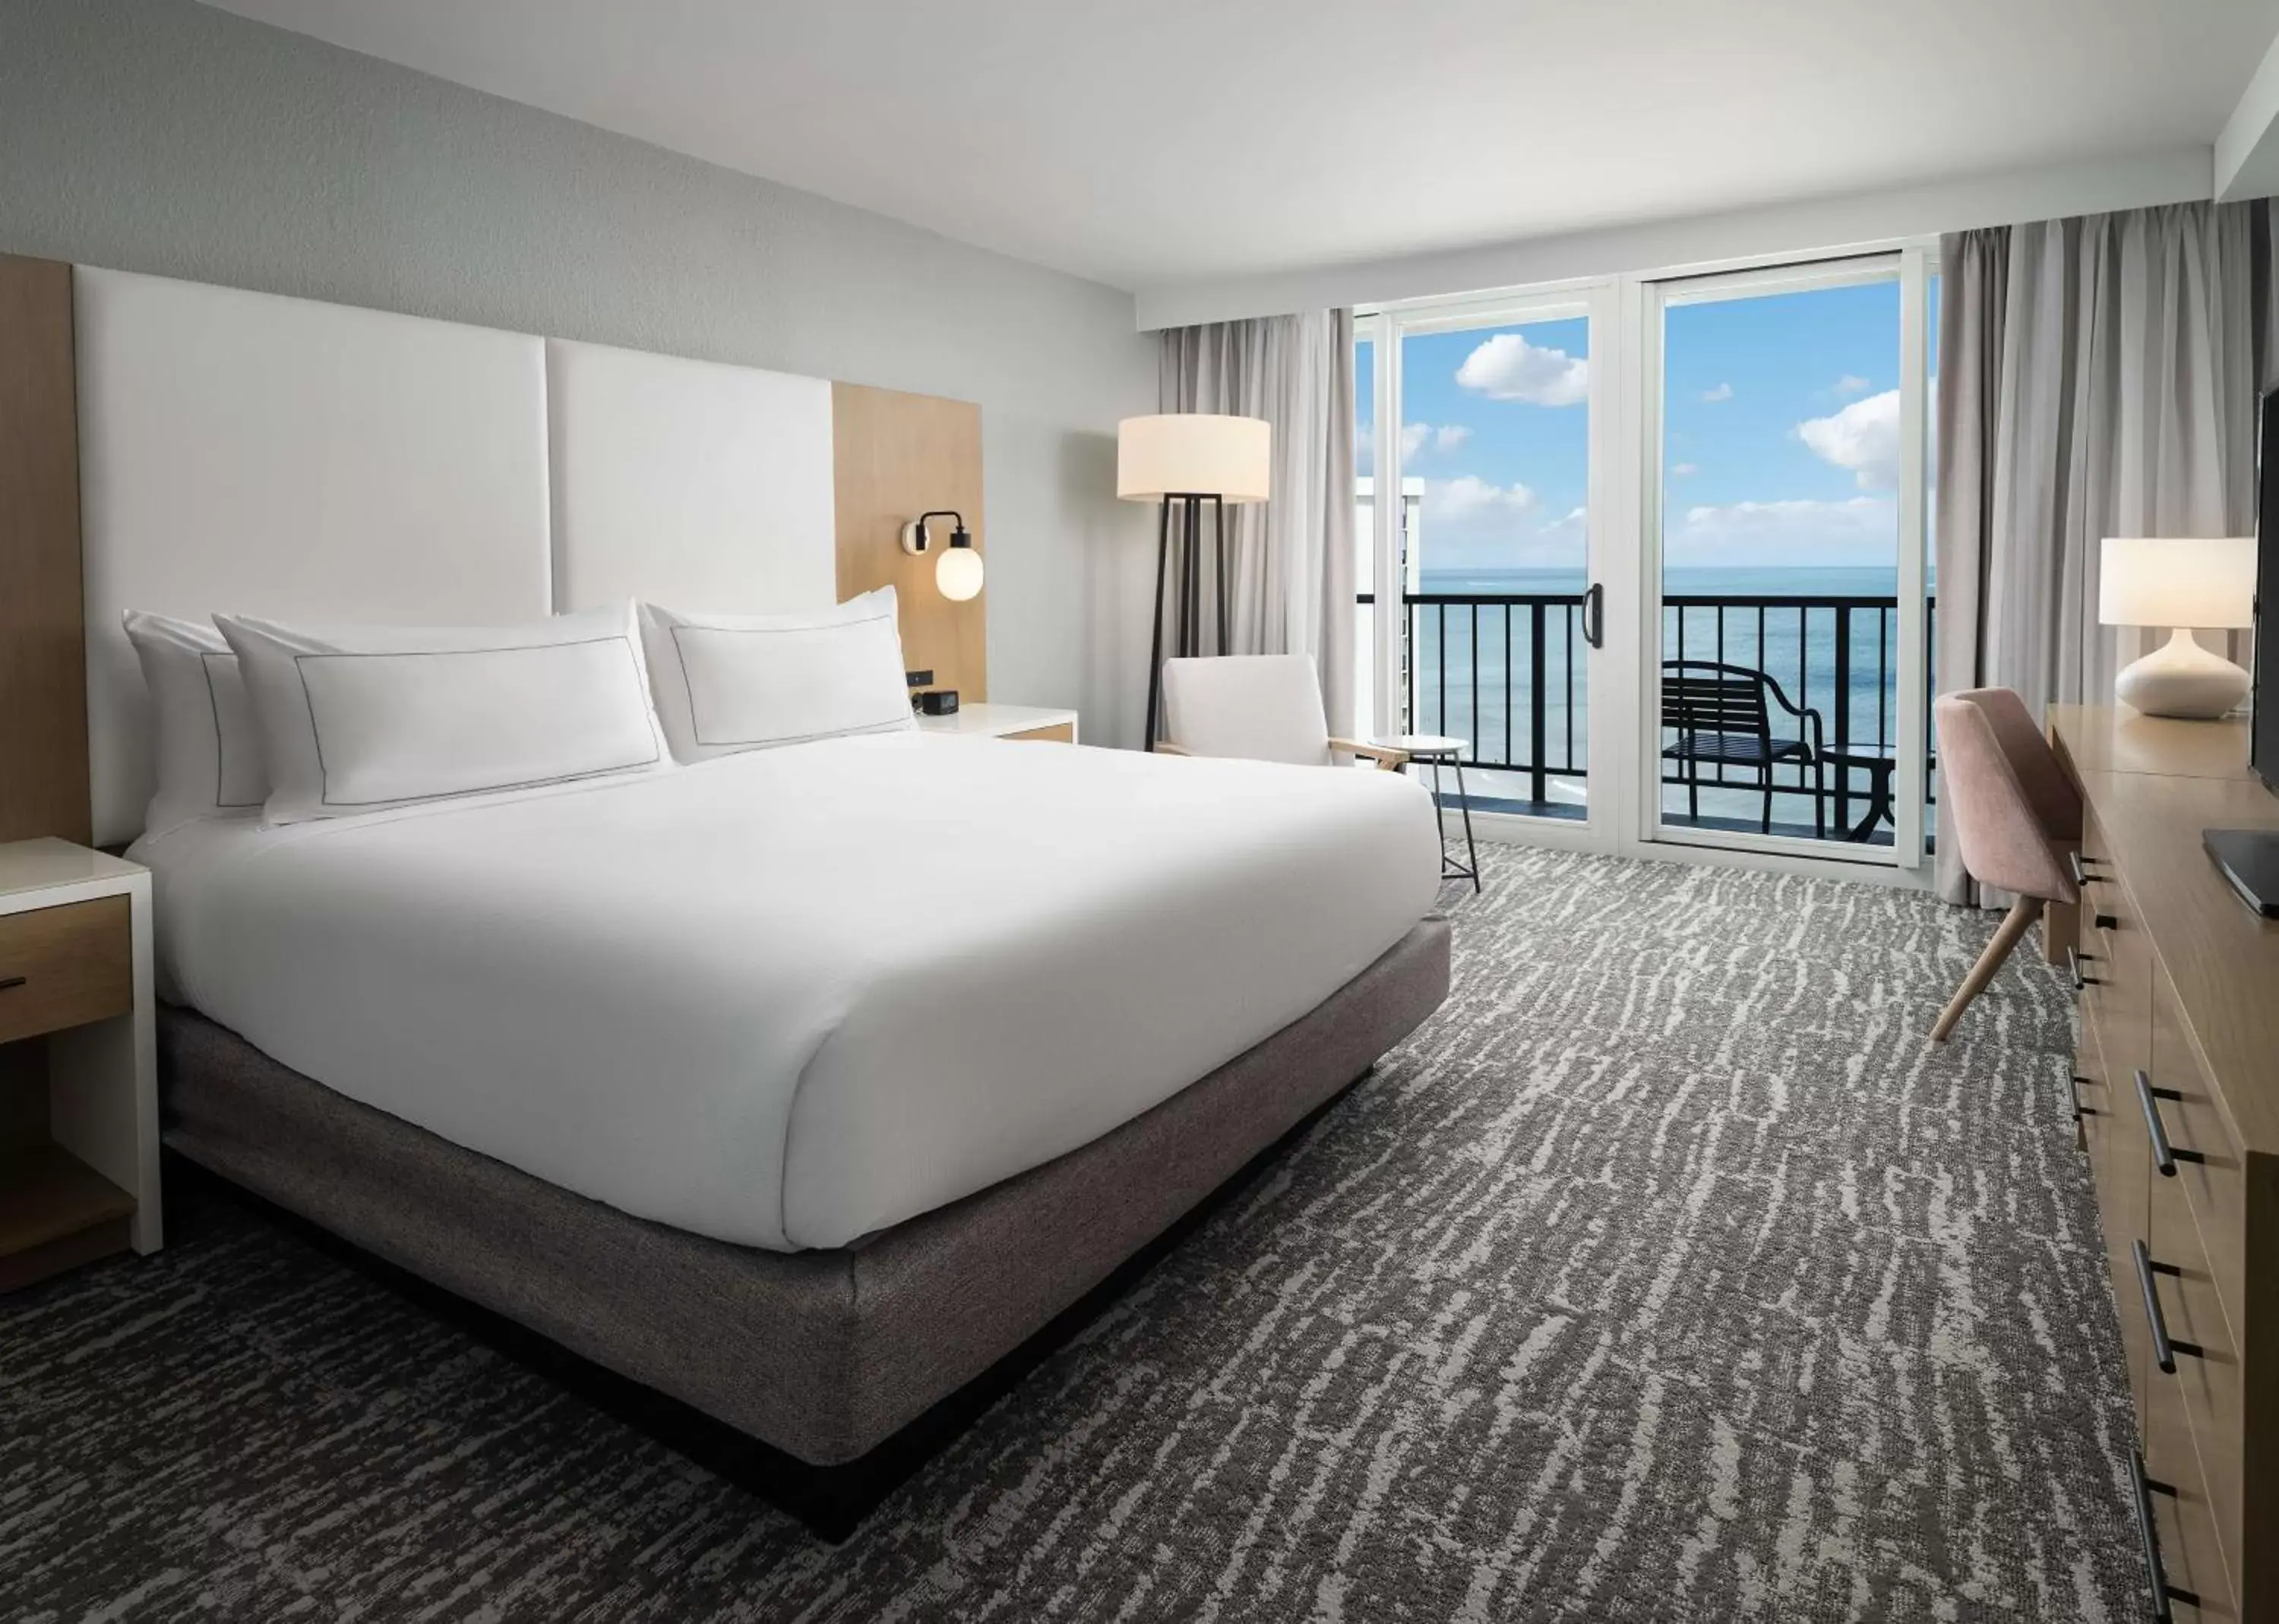 Bedroom in Hilton Myrtle Beach Resort